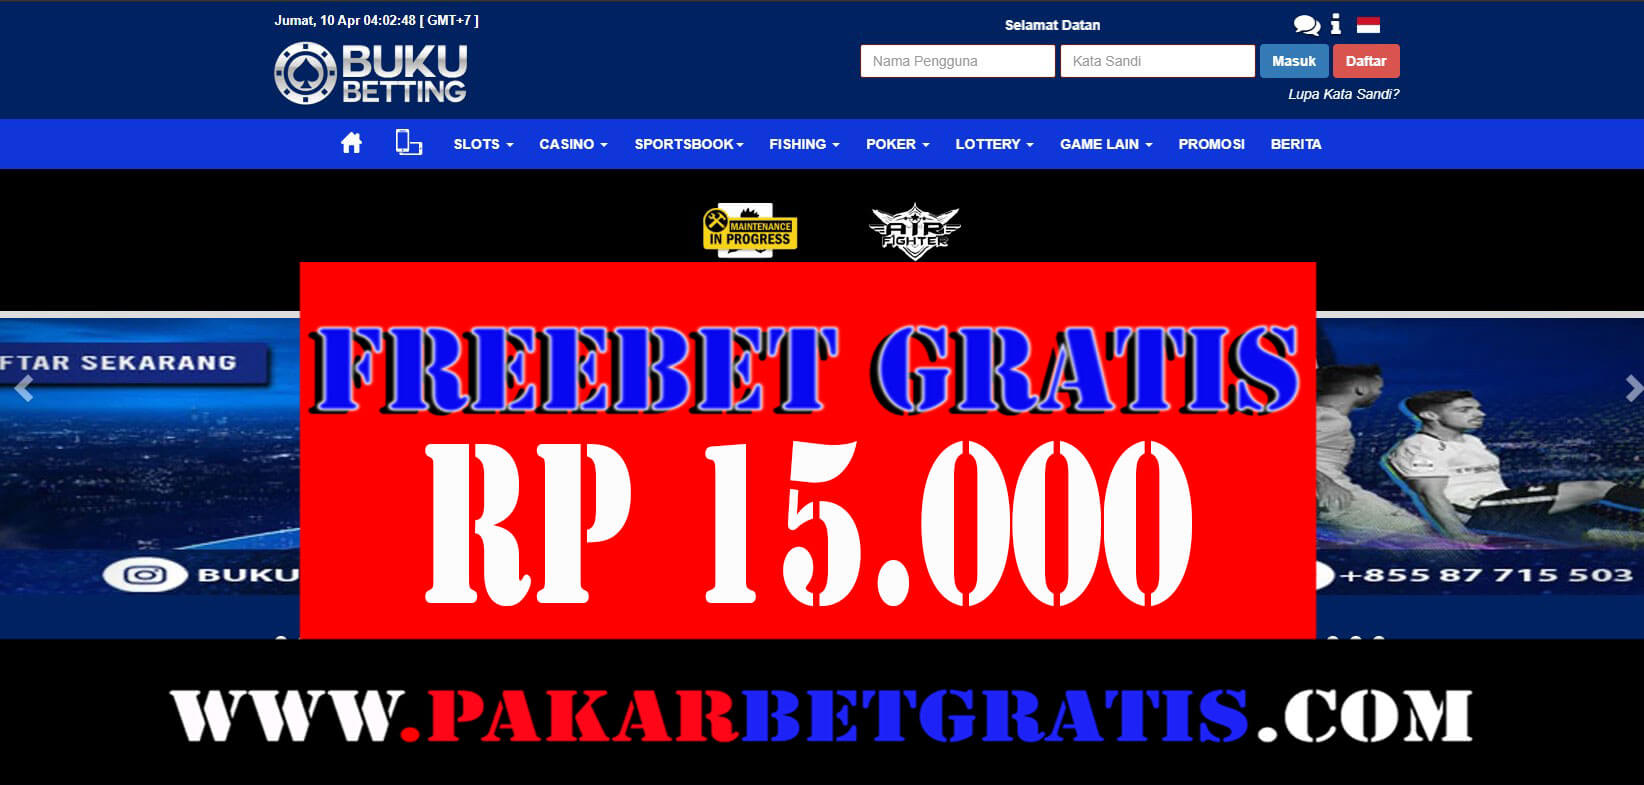 bukubetting Freebet Gratis Rp 15.000 TAnpa deposit